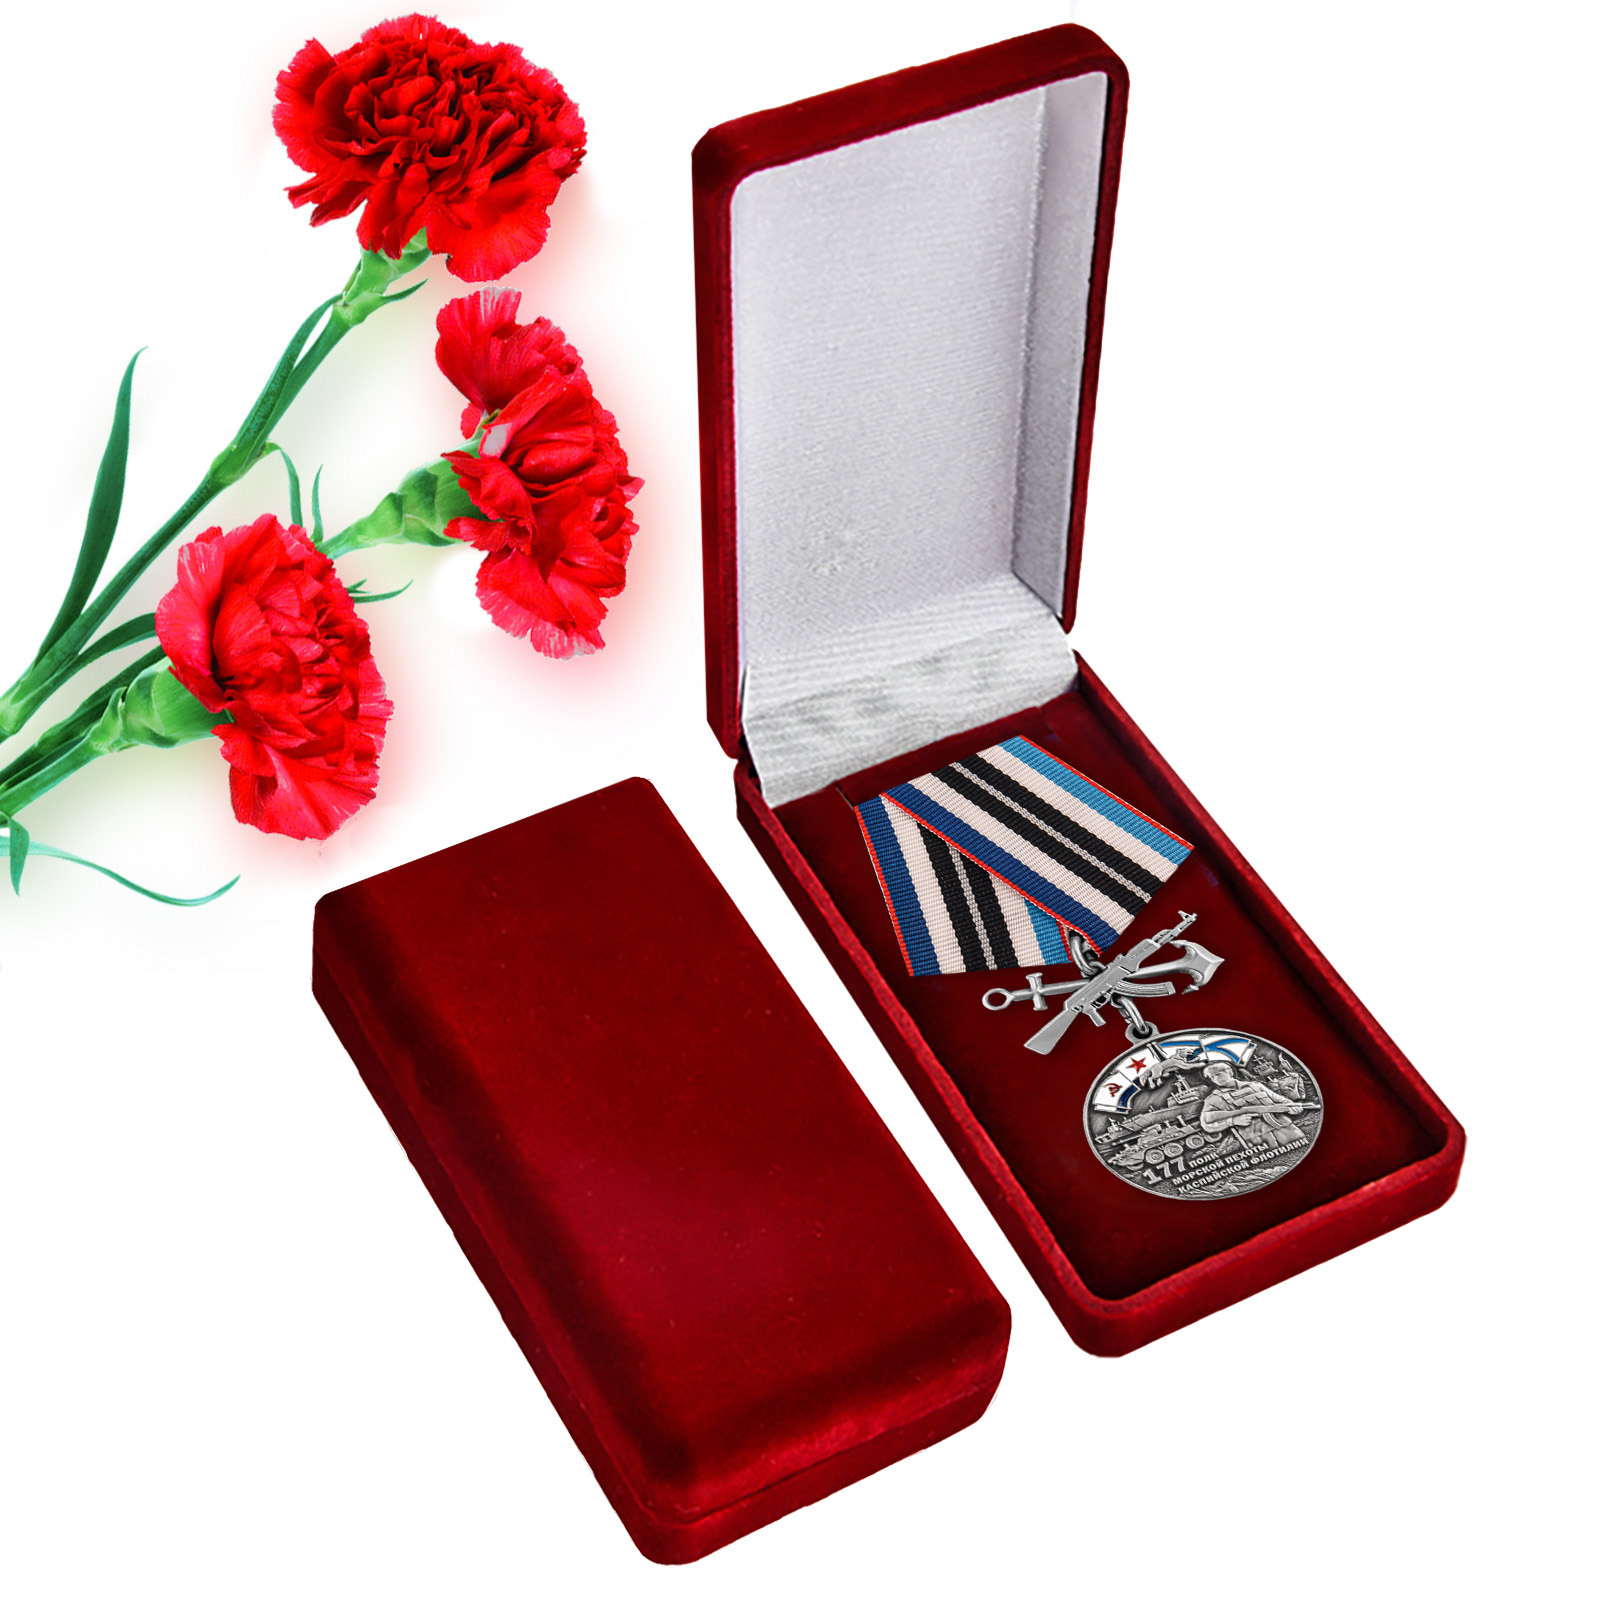 Купить медаль 177-й полк морской пехоты онлайн выгодно